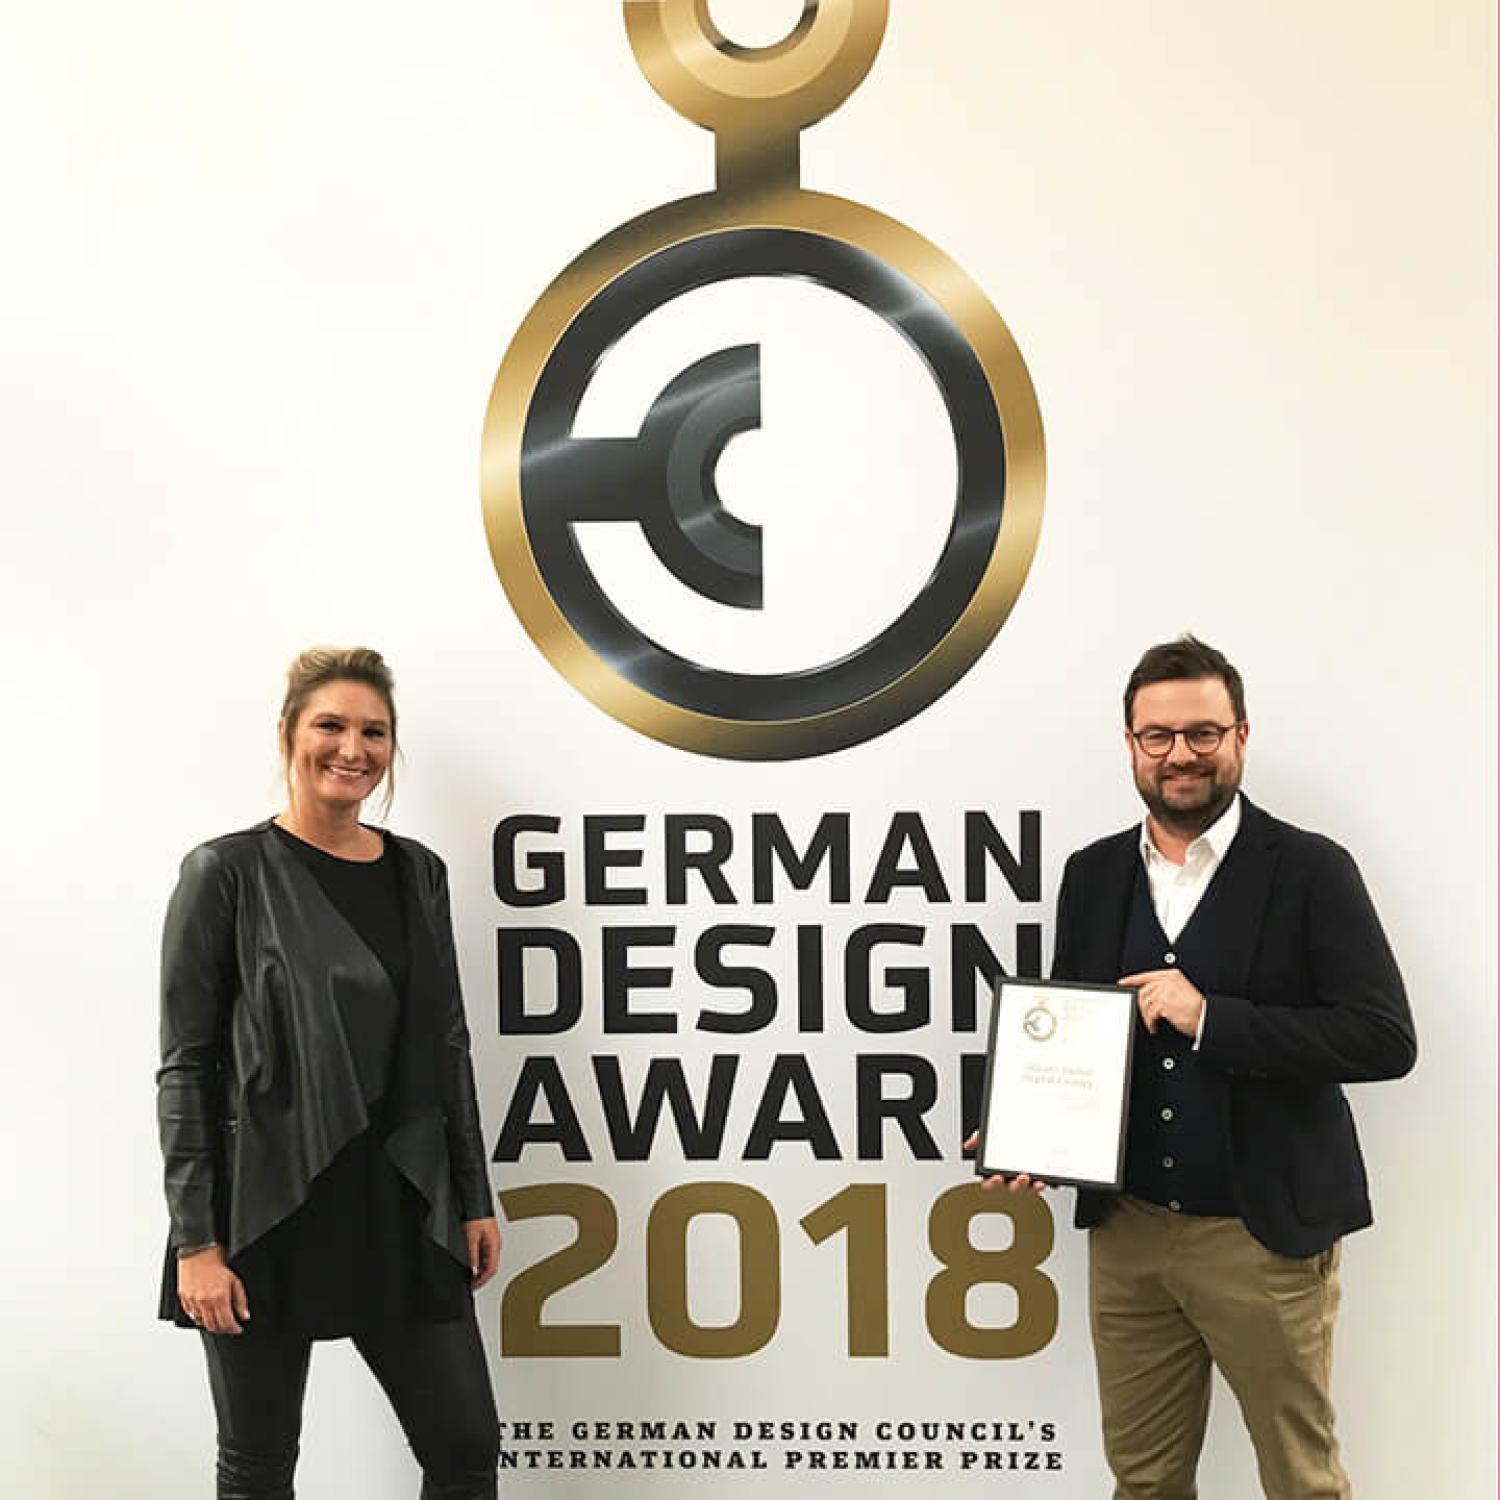 German Design Award für die Allianz Global Digital Factory